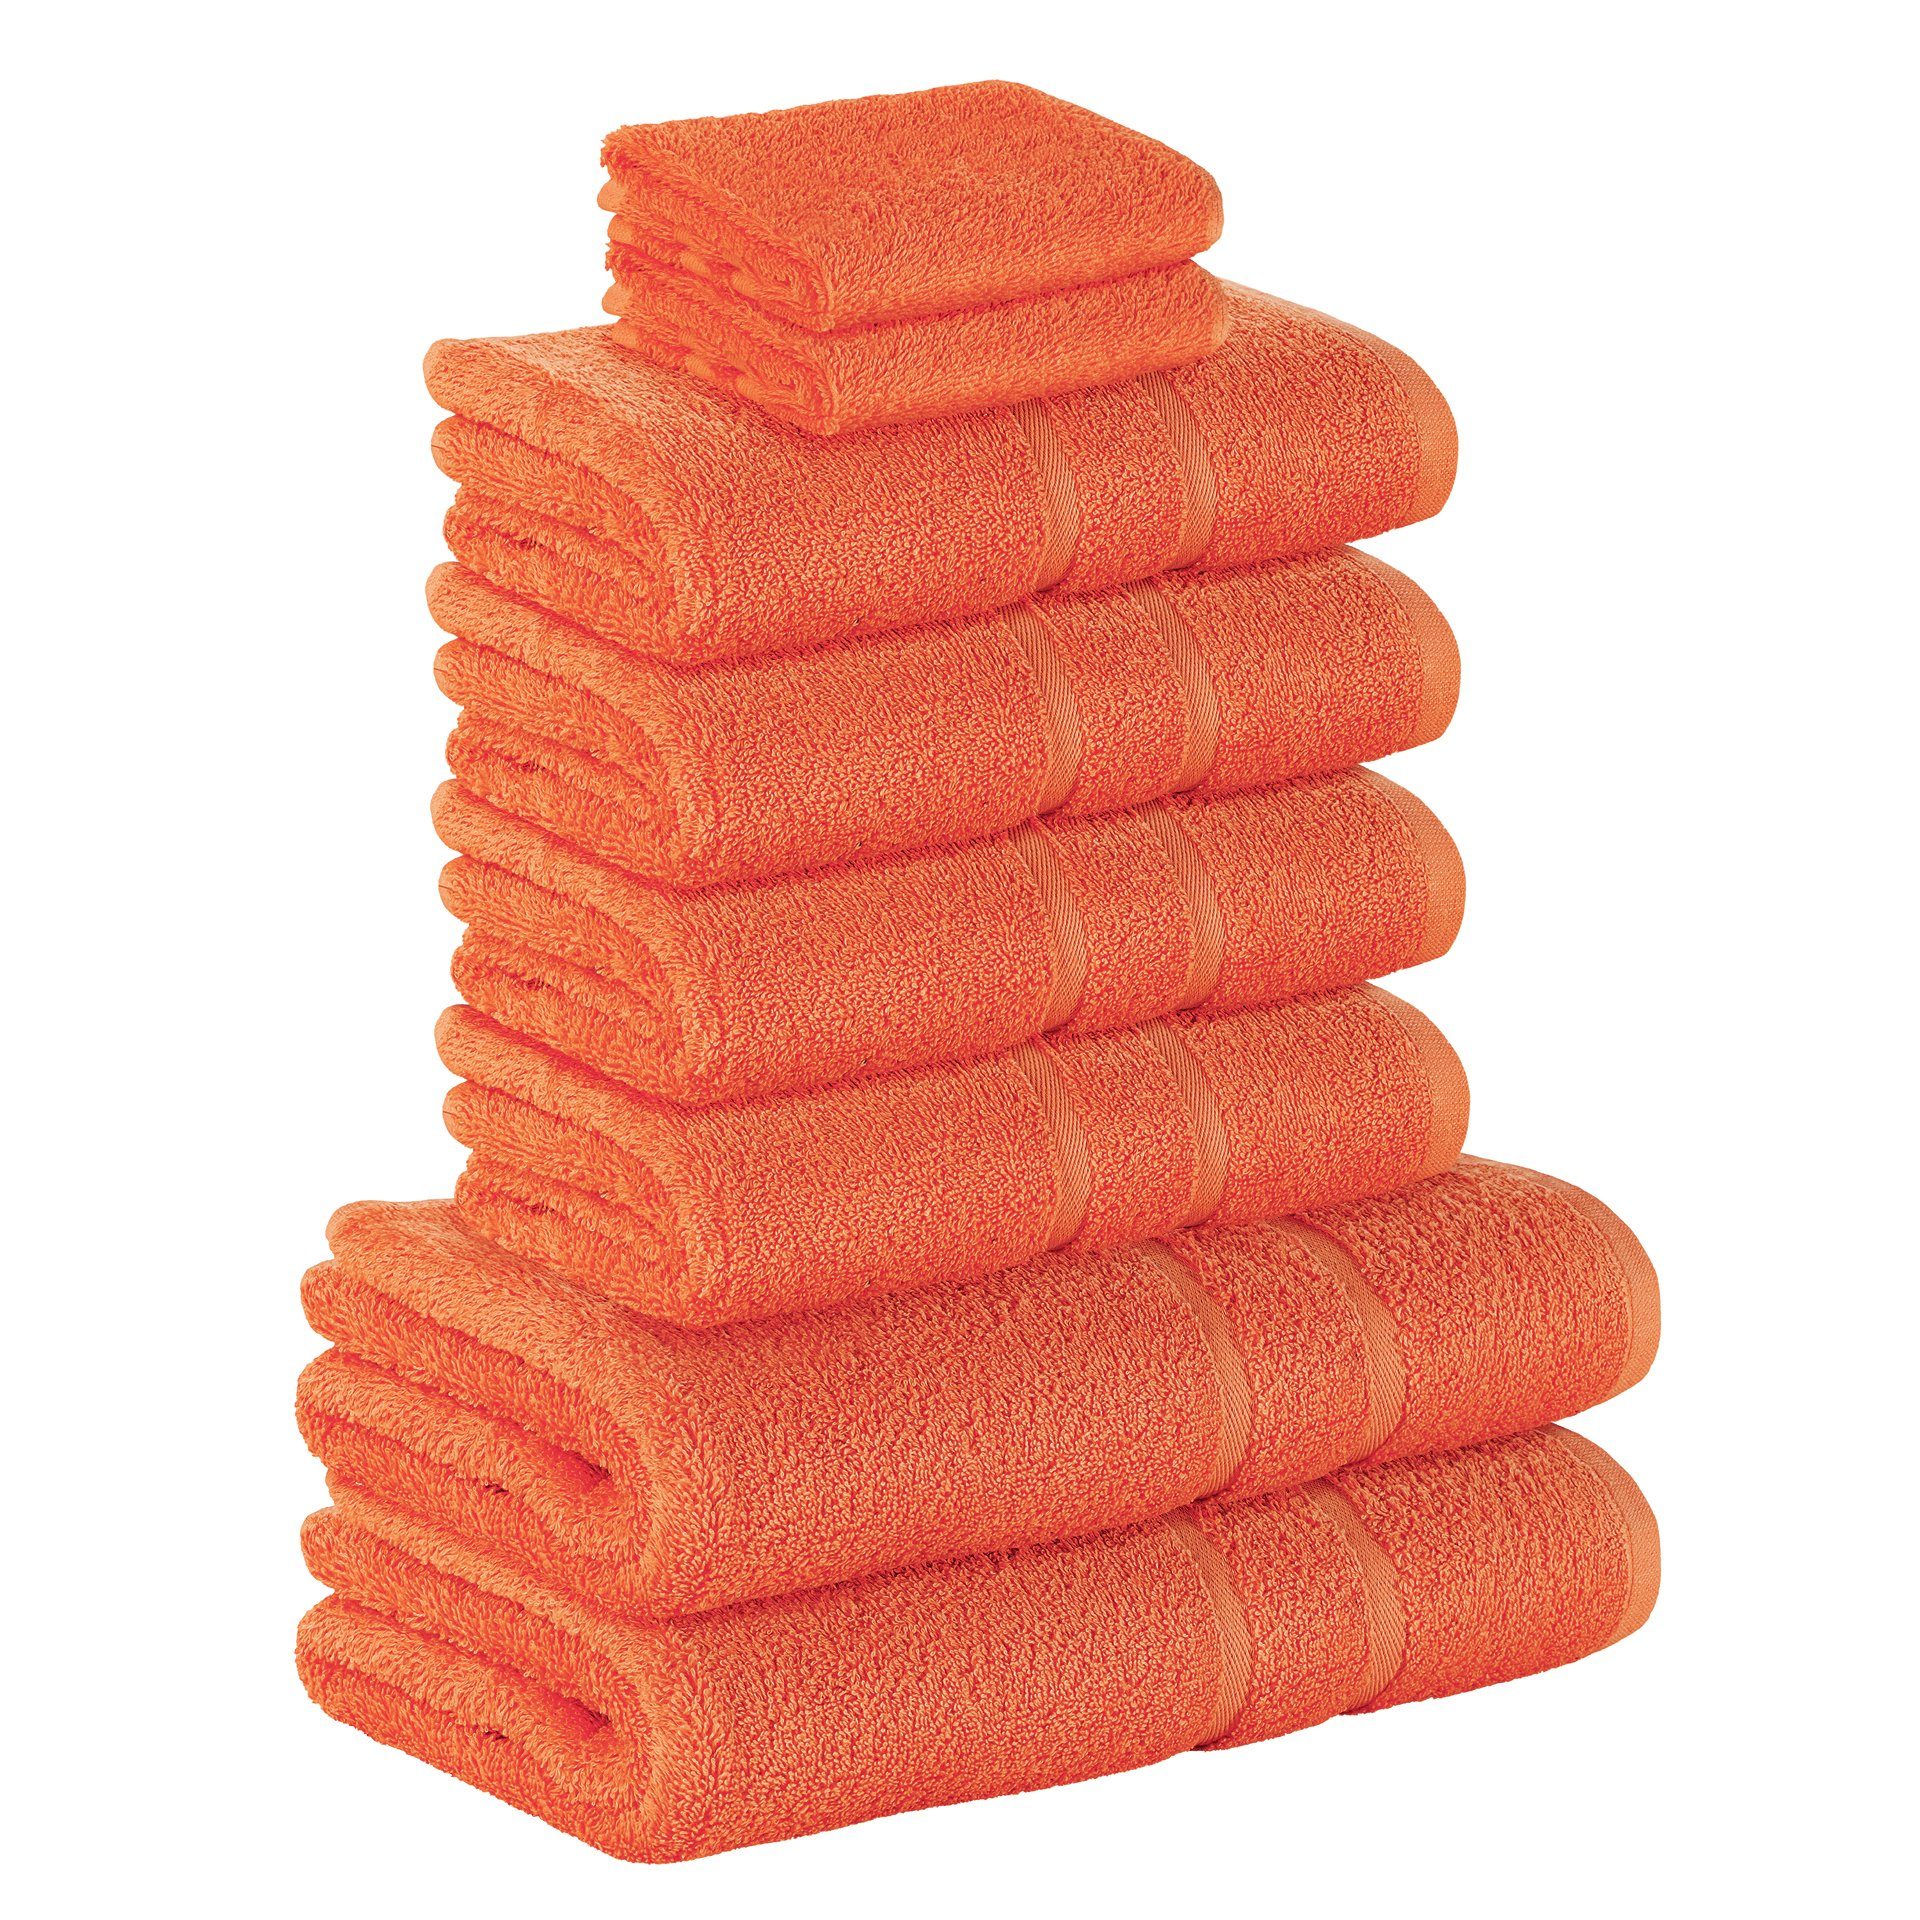 StickandShine Handtuch Set 2x Gästehandtuch 4x Handtücher 2x Duschtücher als SET in verschiedenen Farben (8 Teilig) 100% Baumwolle 500 GSM Frottee 8er Handtuch Pack, 100% Baumwolle 500 GSM Orange